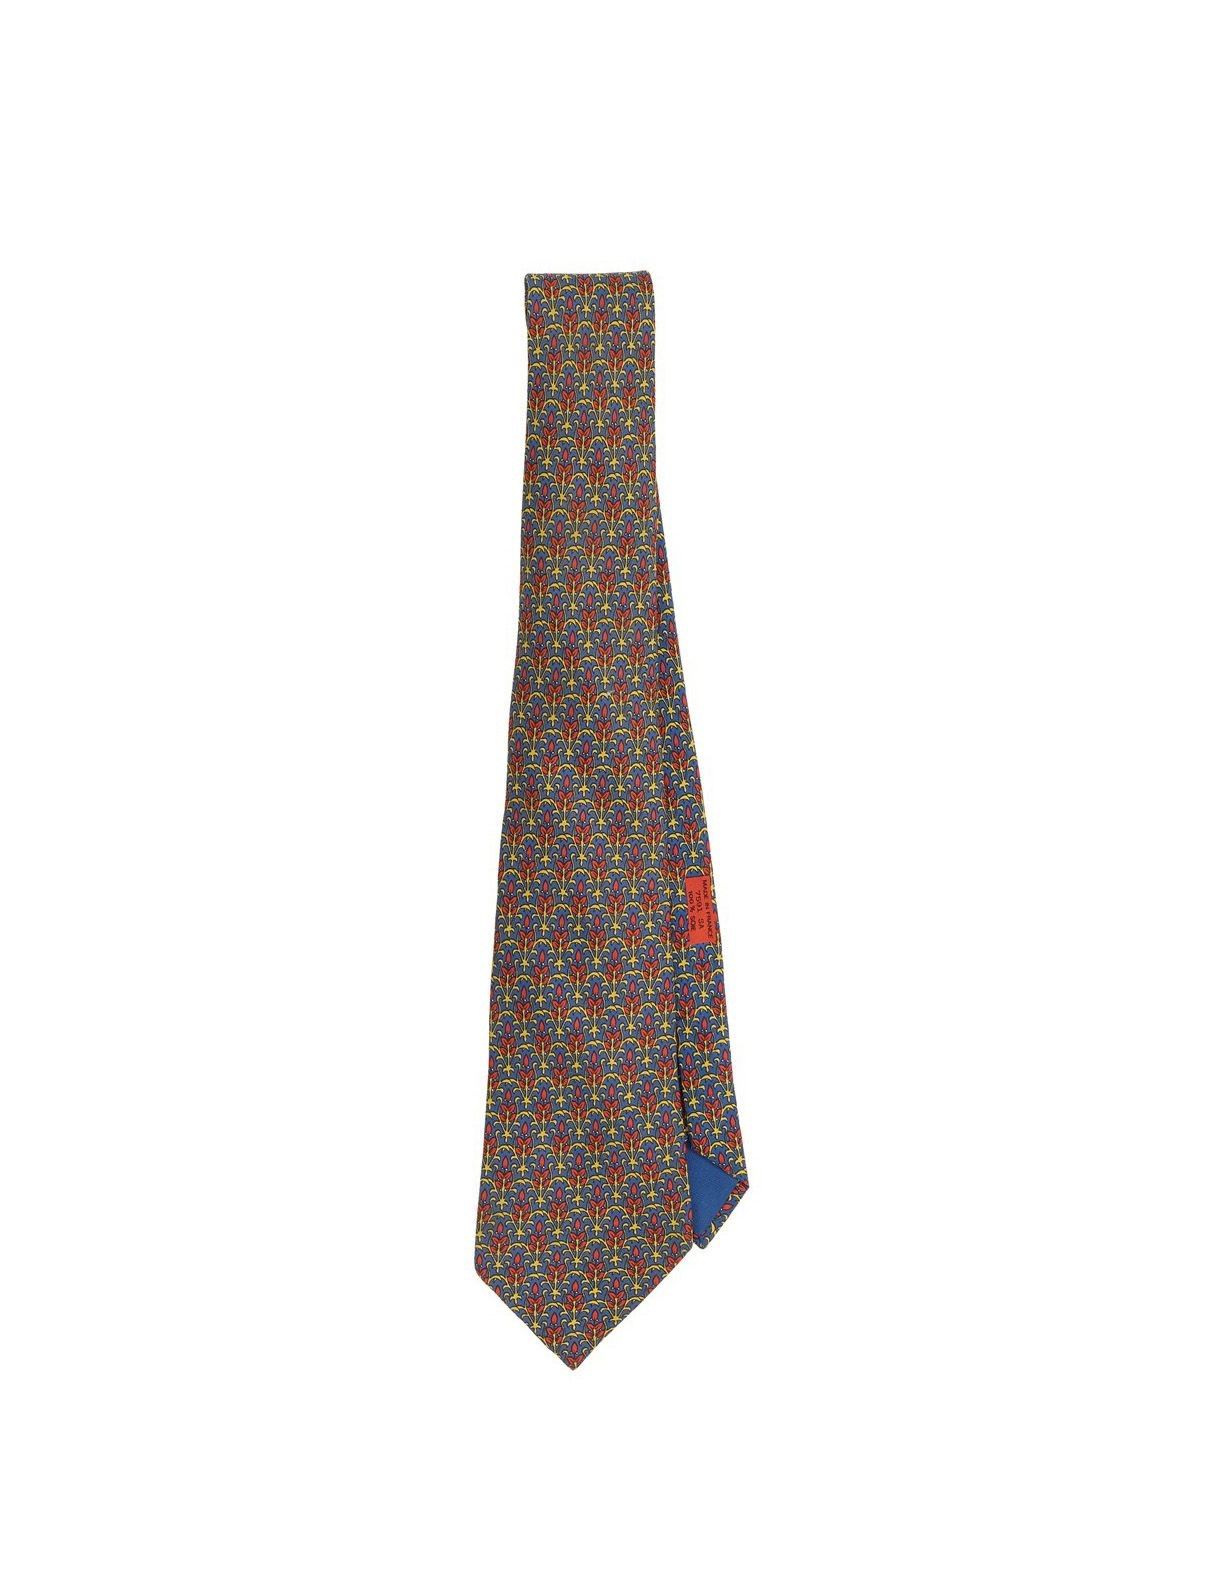 HERMES 爱马仕丝绸领带。状况良好。

爱马仕丝绸领带。条件良好。